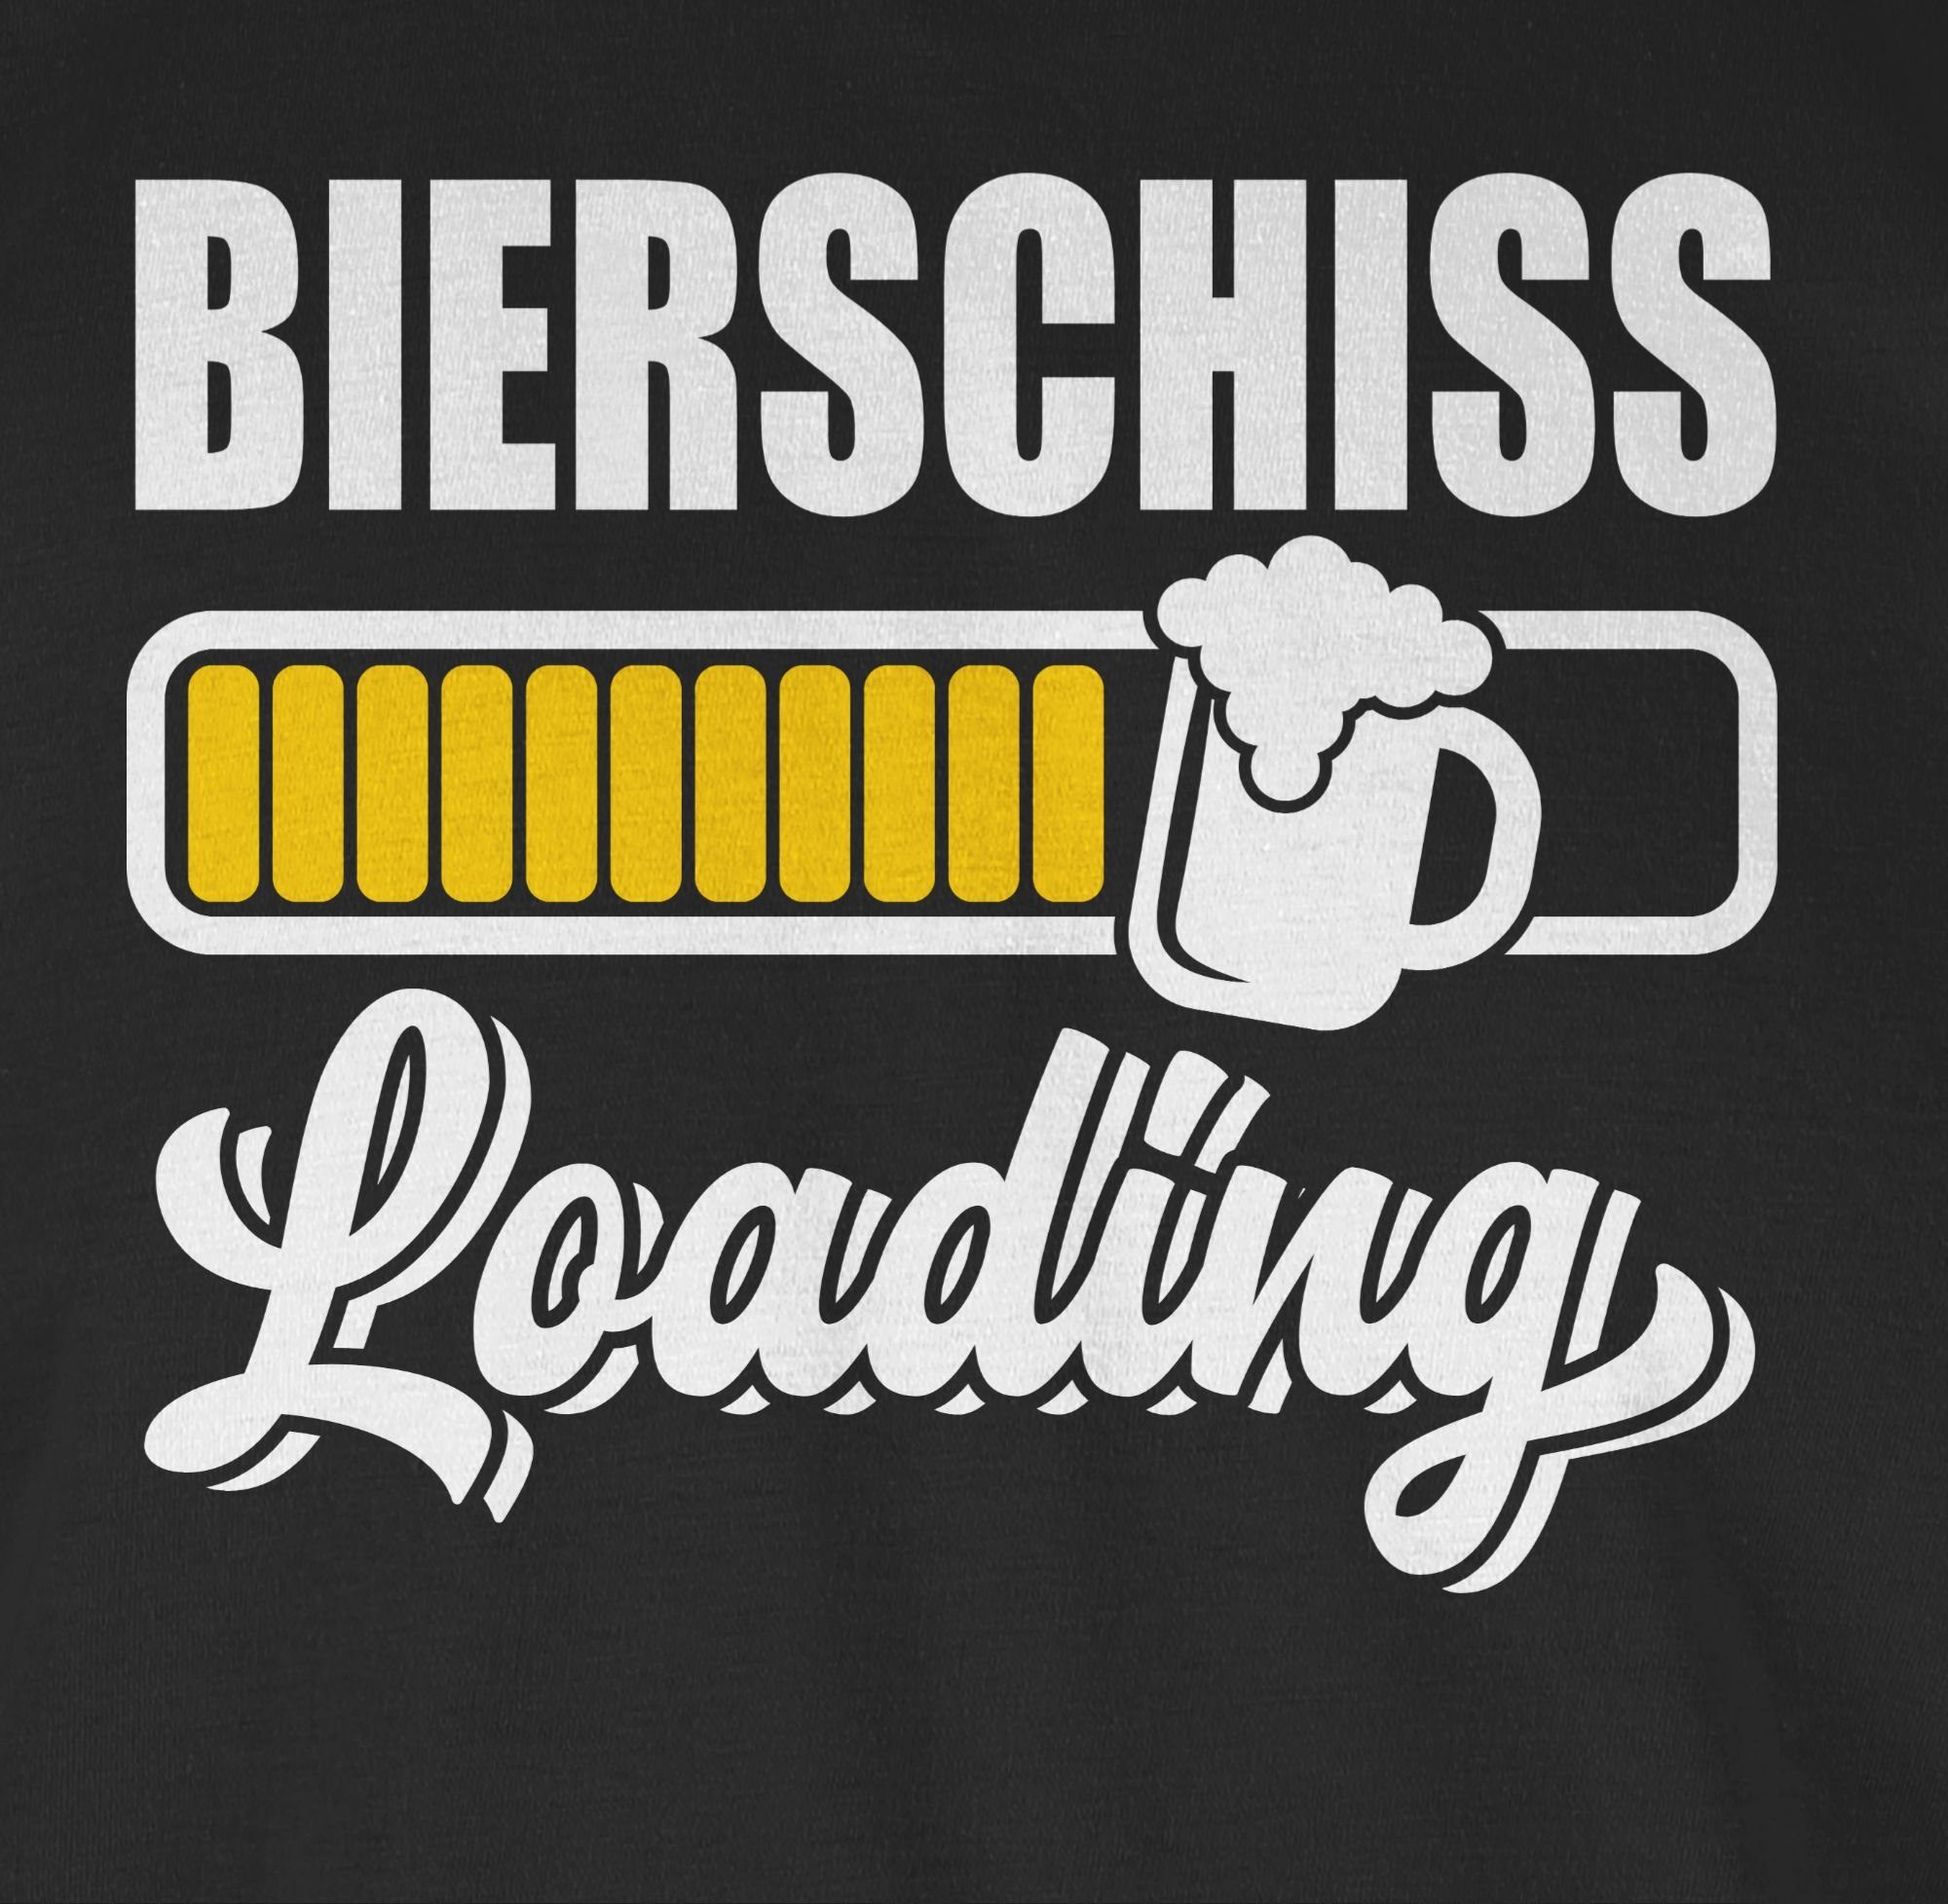 Shirtracer Karneval Bierschiss 1 T-Shirt loading Schwarz Outfit